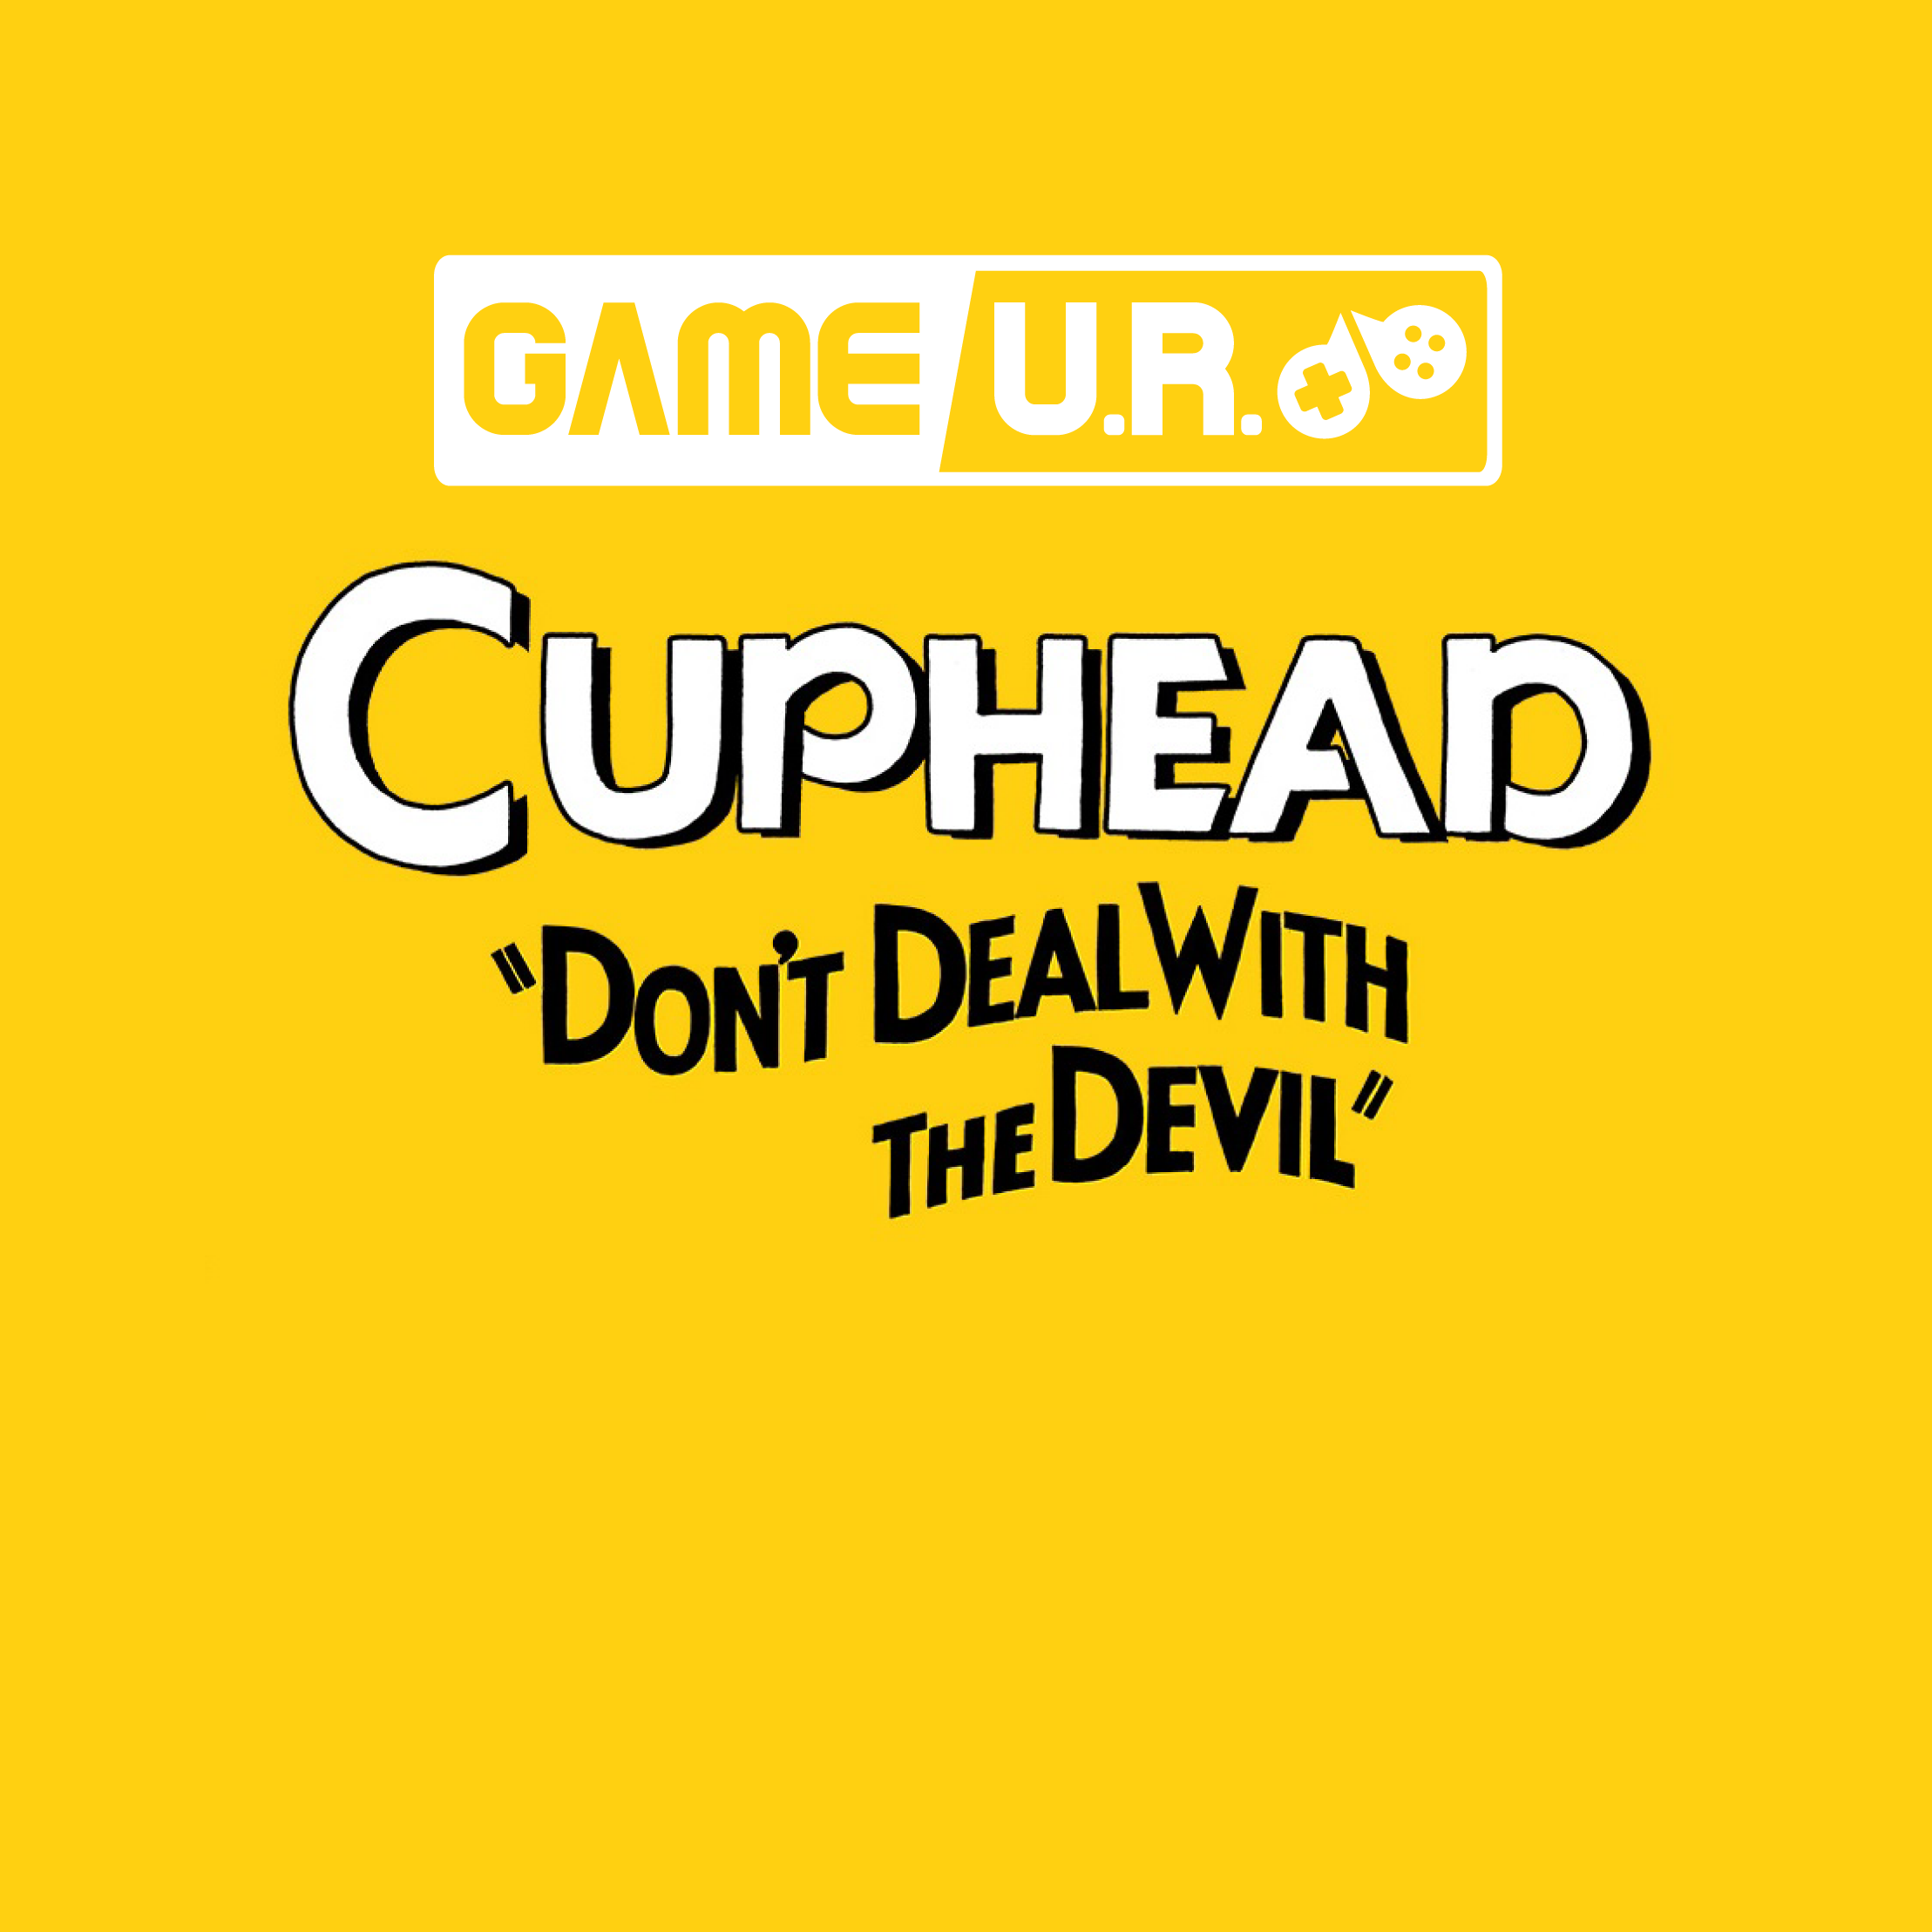 Call Of Duty rencontre Cuphead dans un magnifique nouveau jeu de tir